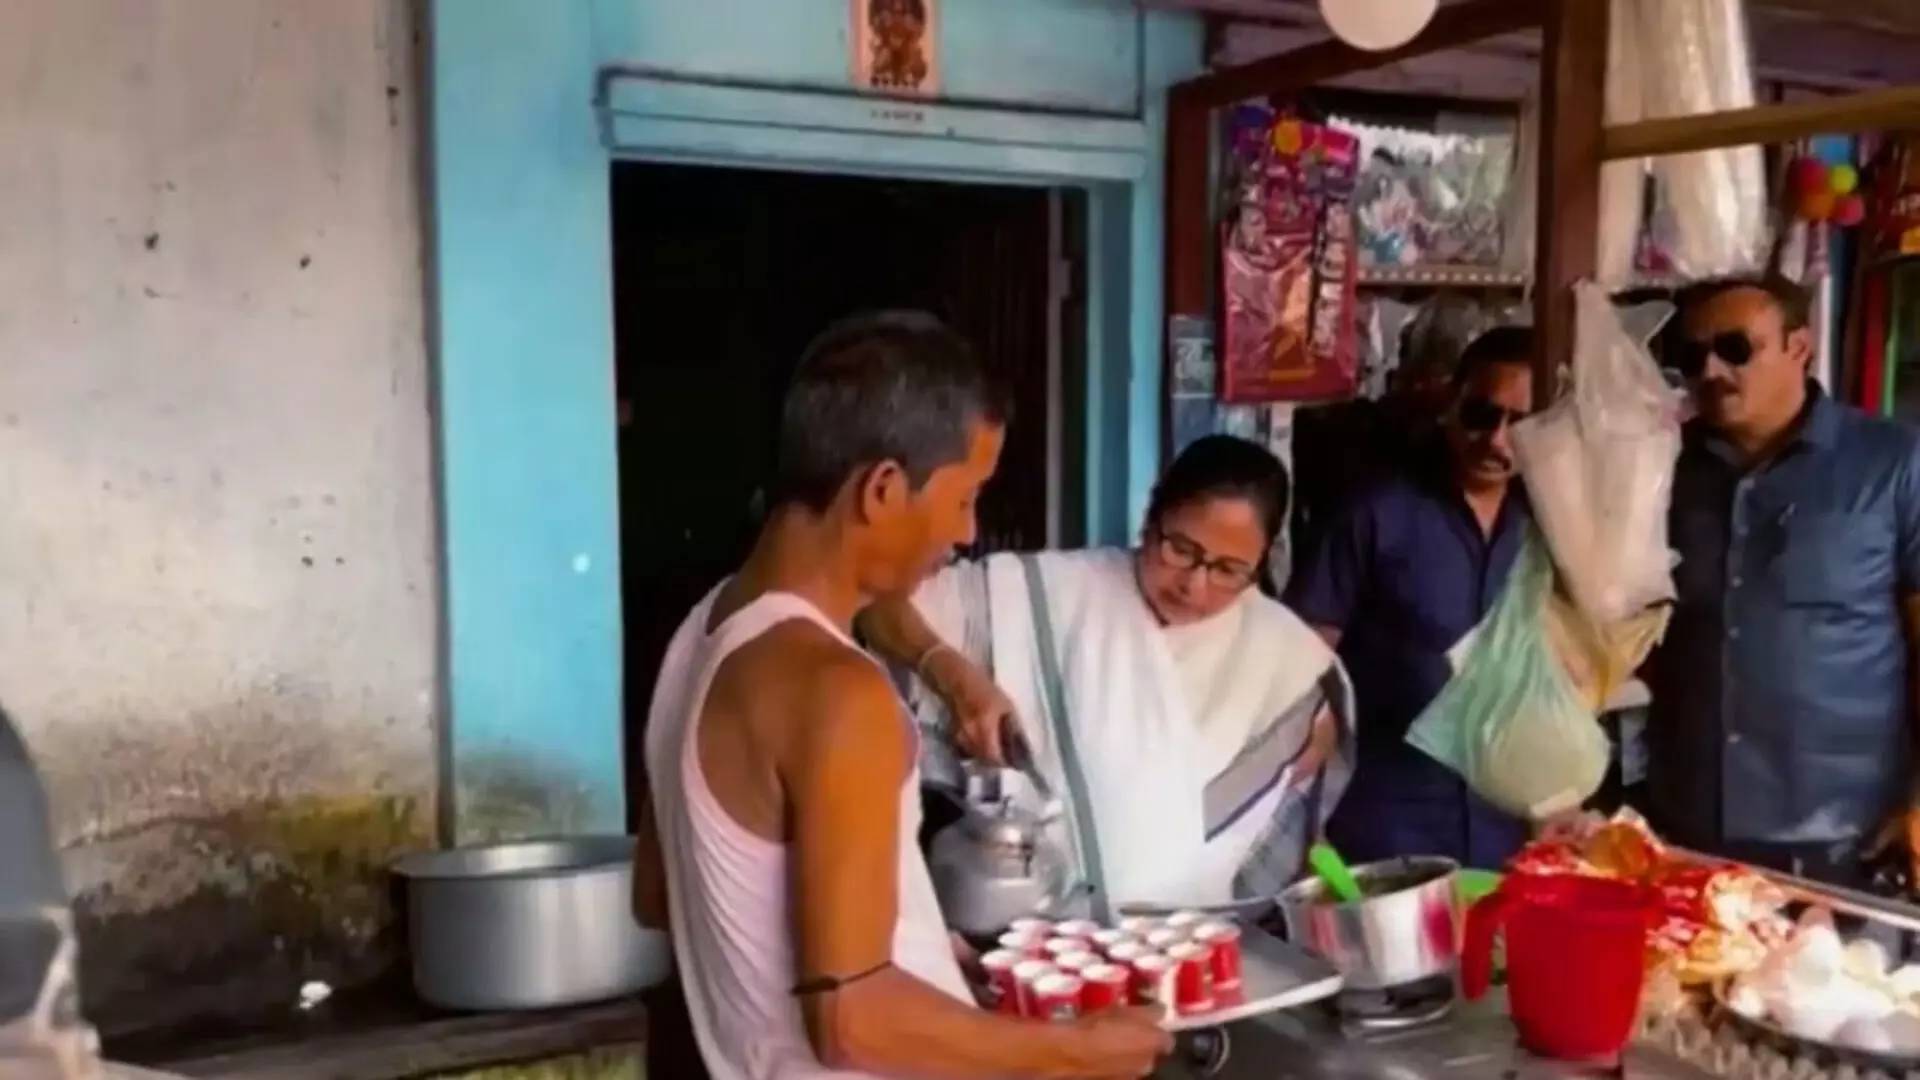 CM ममता बनर्जी ने तूफान प्रभावित जलपाईगुड़ी में लोगो के साथ बनाई चाय, देखें वीडियो...